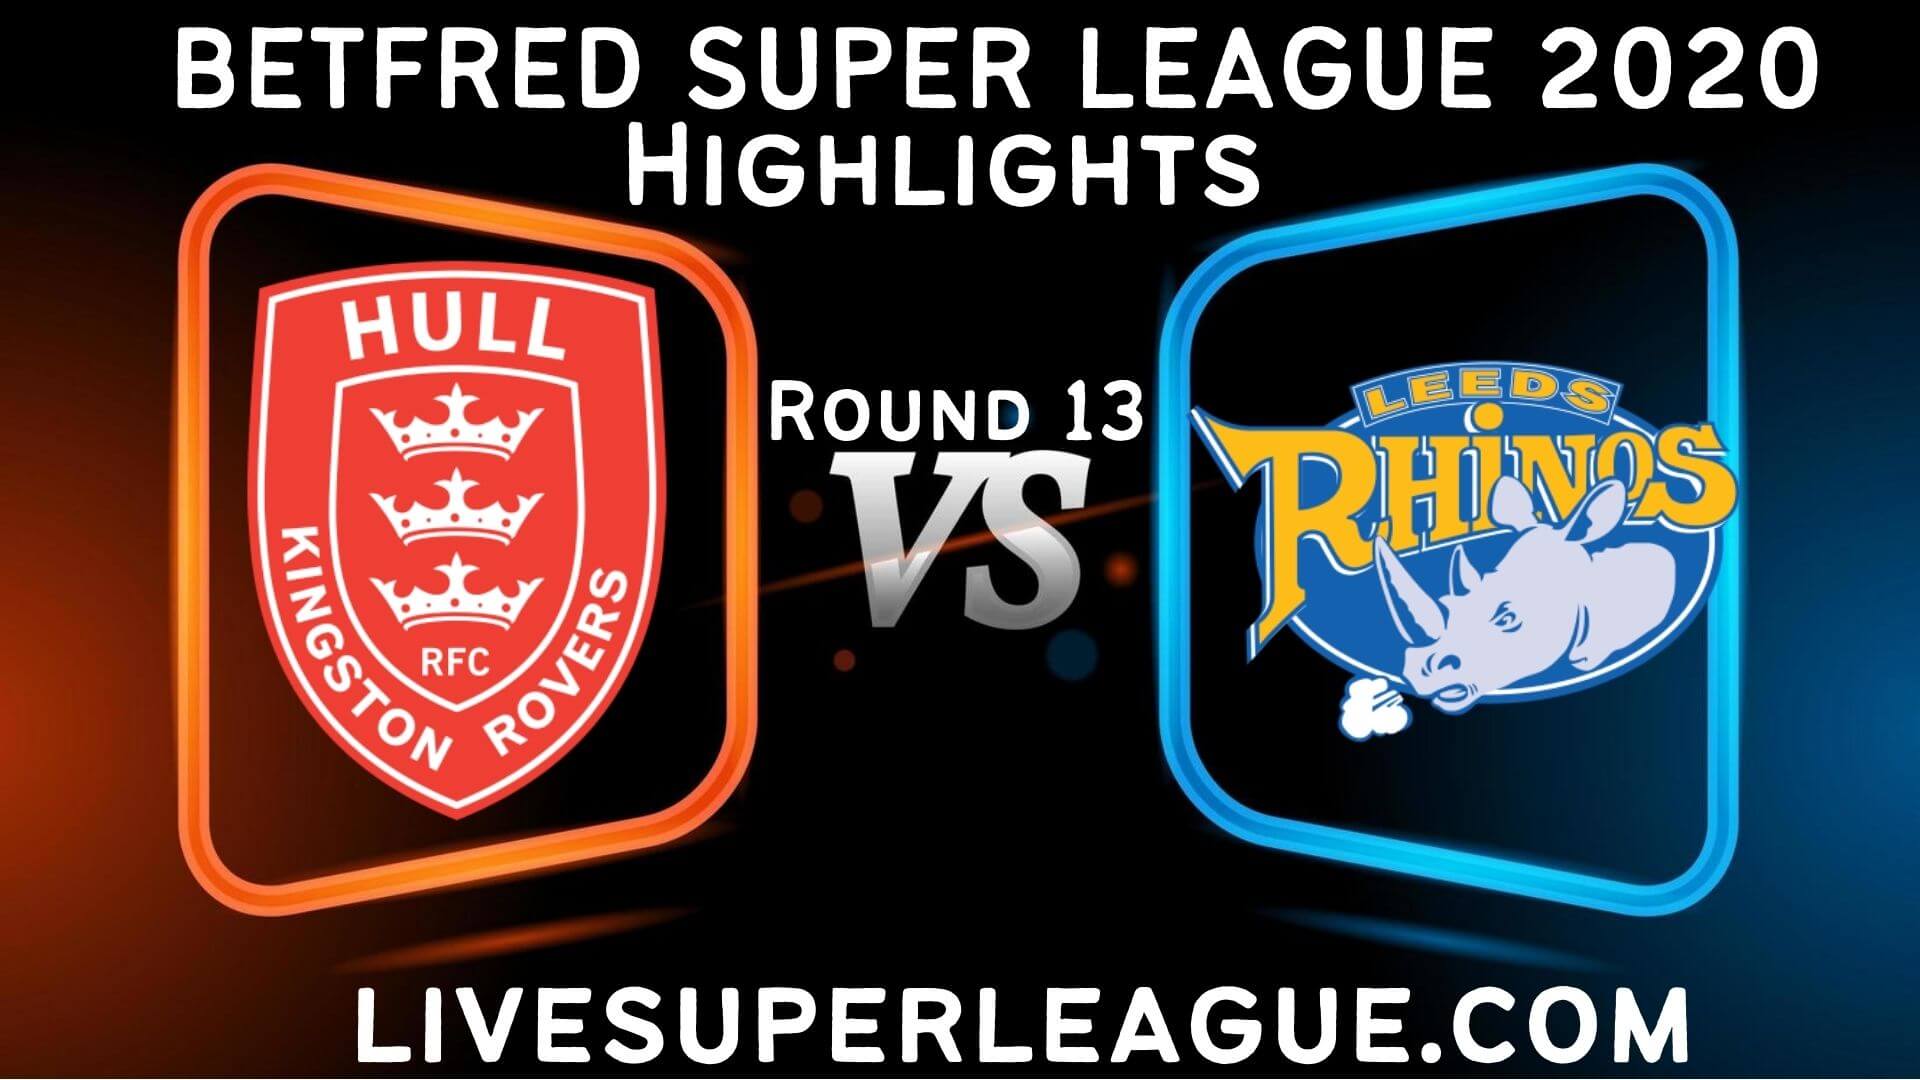 Hull KR vs Leeds Rhinos Highlights 2020 Rd 13